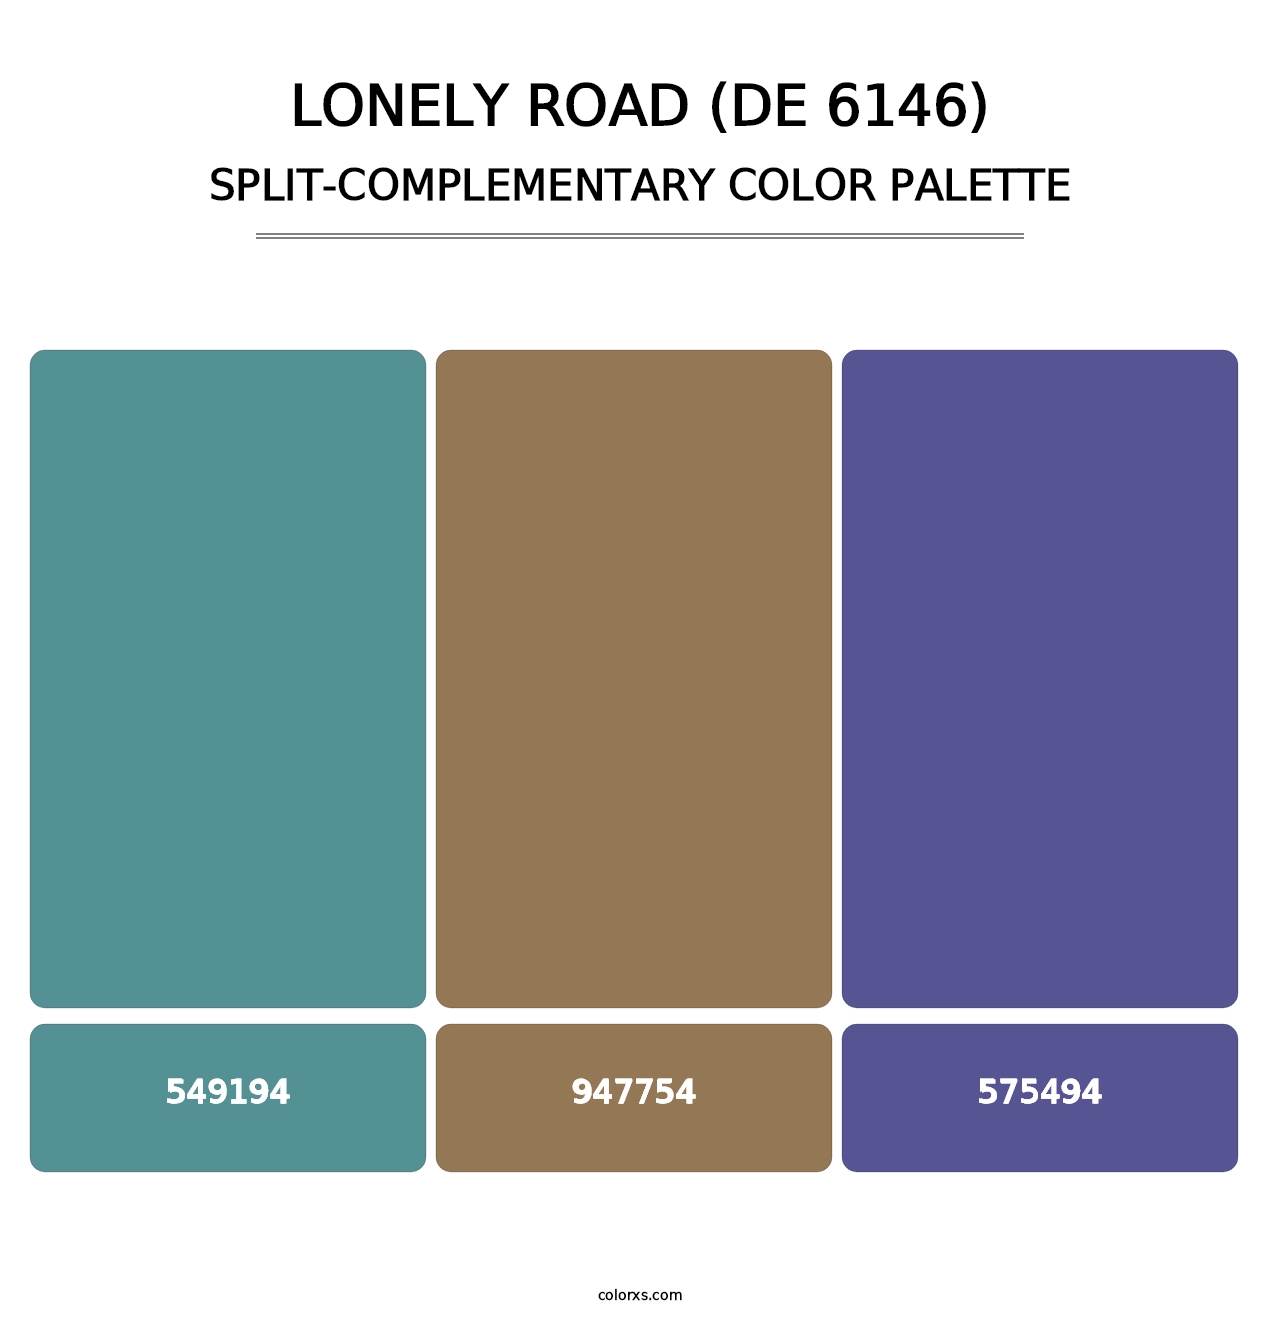 Lonely Road (DE 6146) - Split-Complementary Color Palette